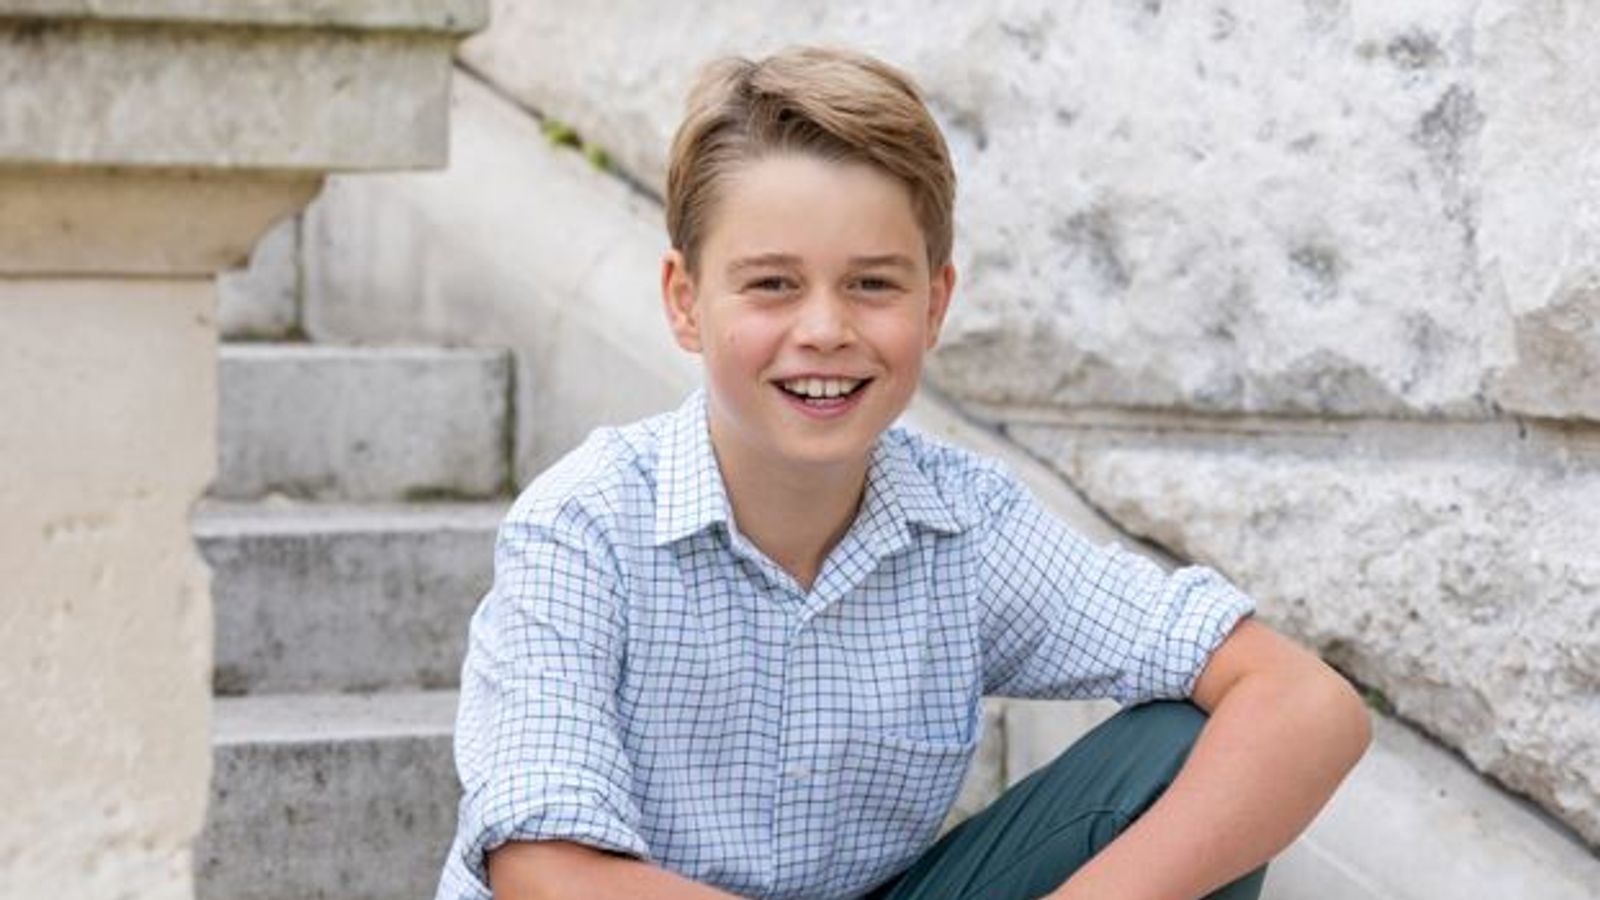 Prince George : Le futur roi souriant apparaît sur une nouvelle photo à l’occasion de son dixième anniversaire |  Nouvelles du Royaume-Uni